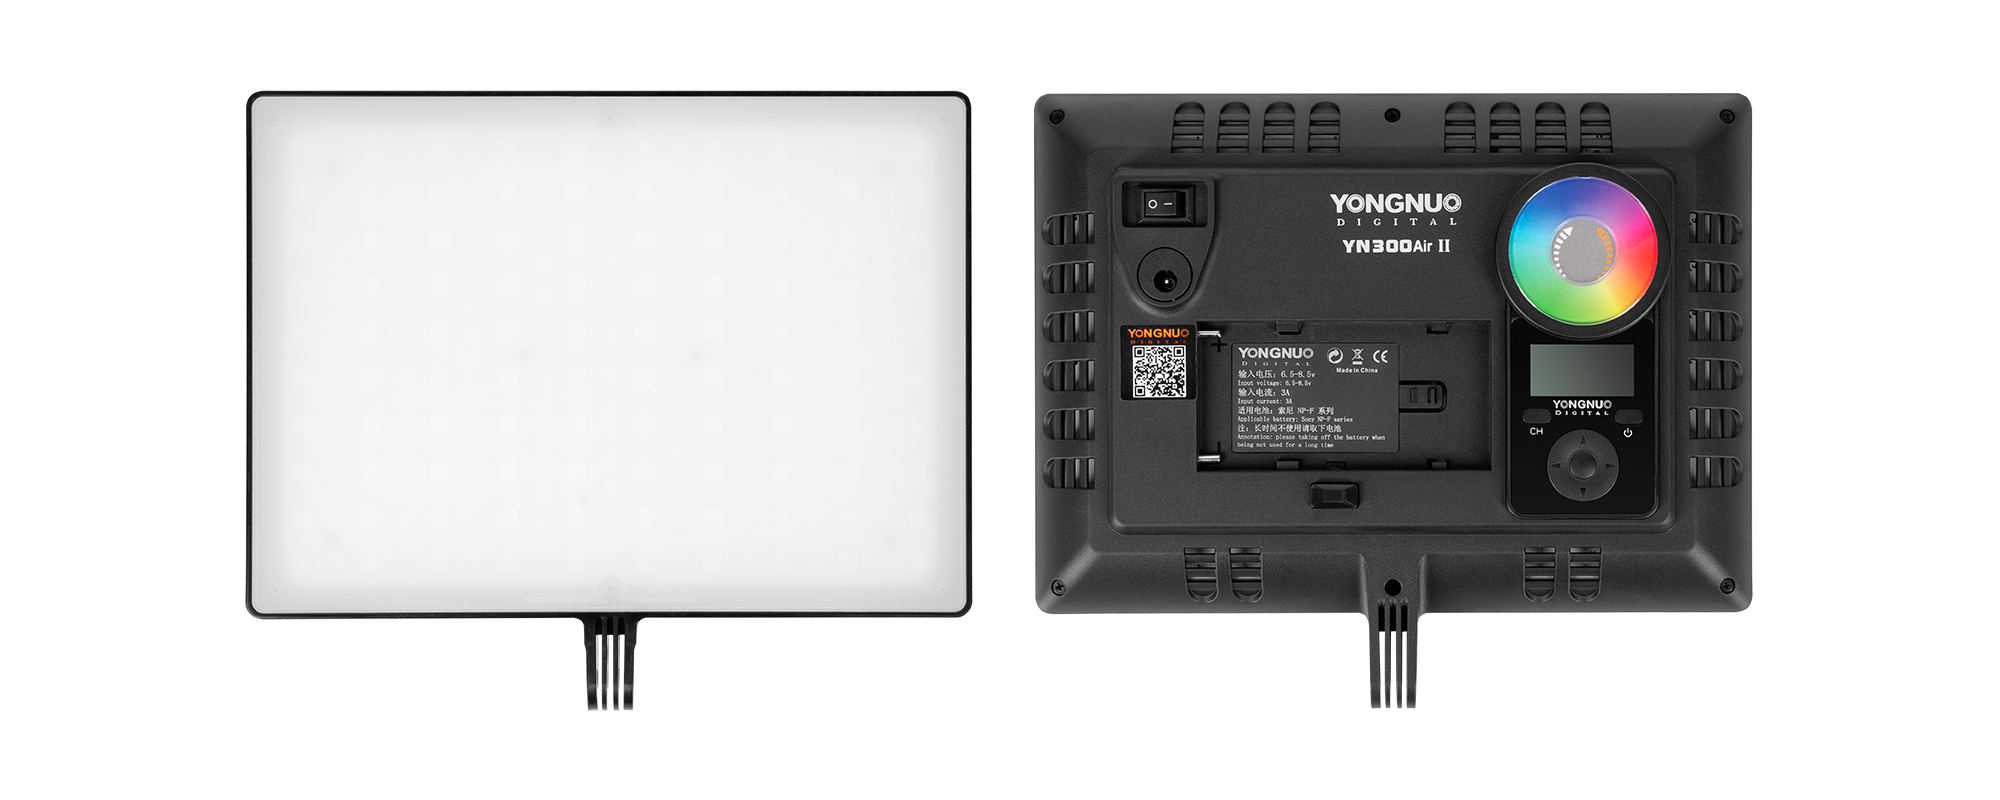 Lampa LED Yongnuo YN300 Air II - RGB, WB (3200 K - 5600 K) - przód i tył lampy